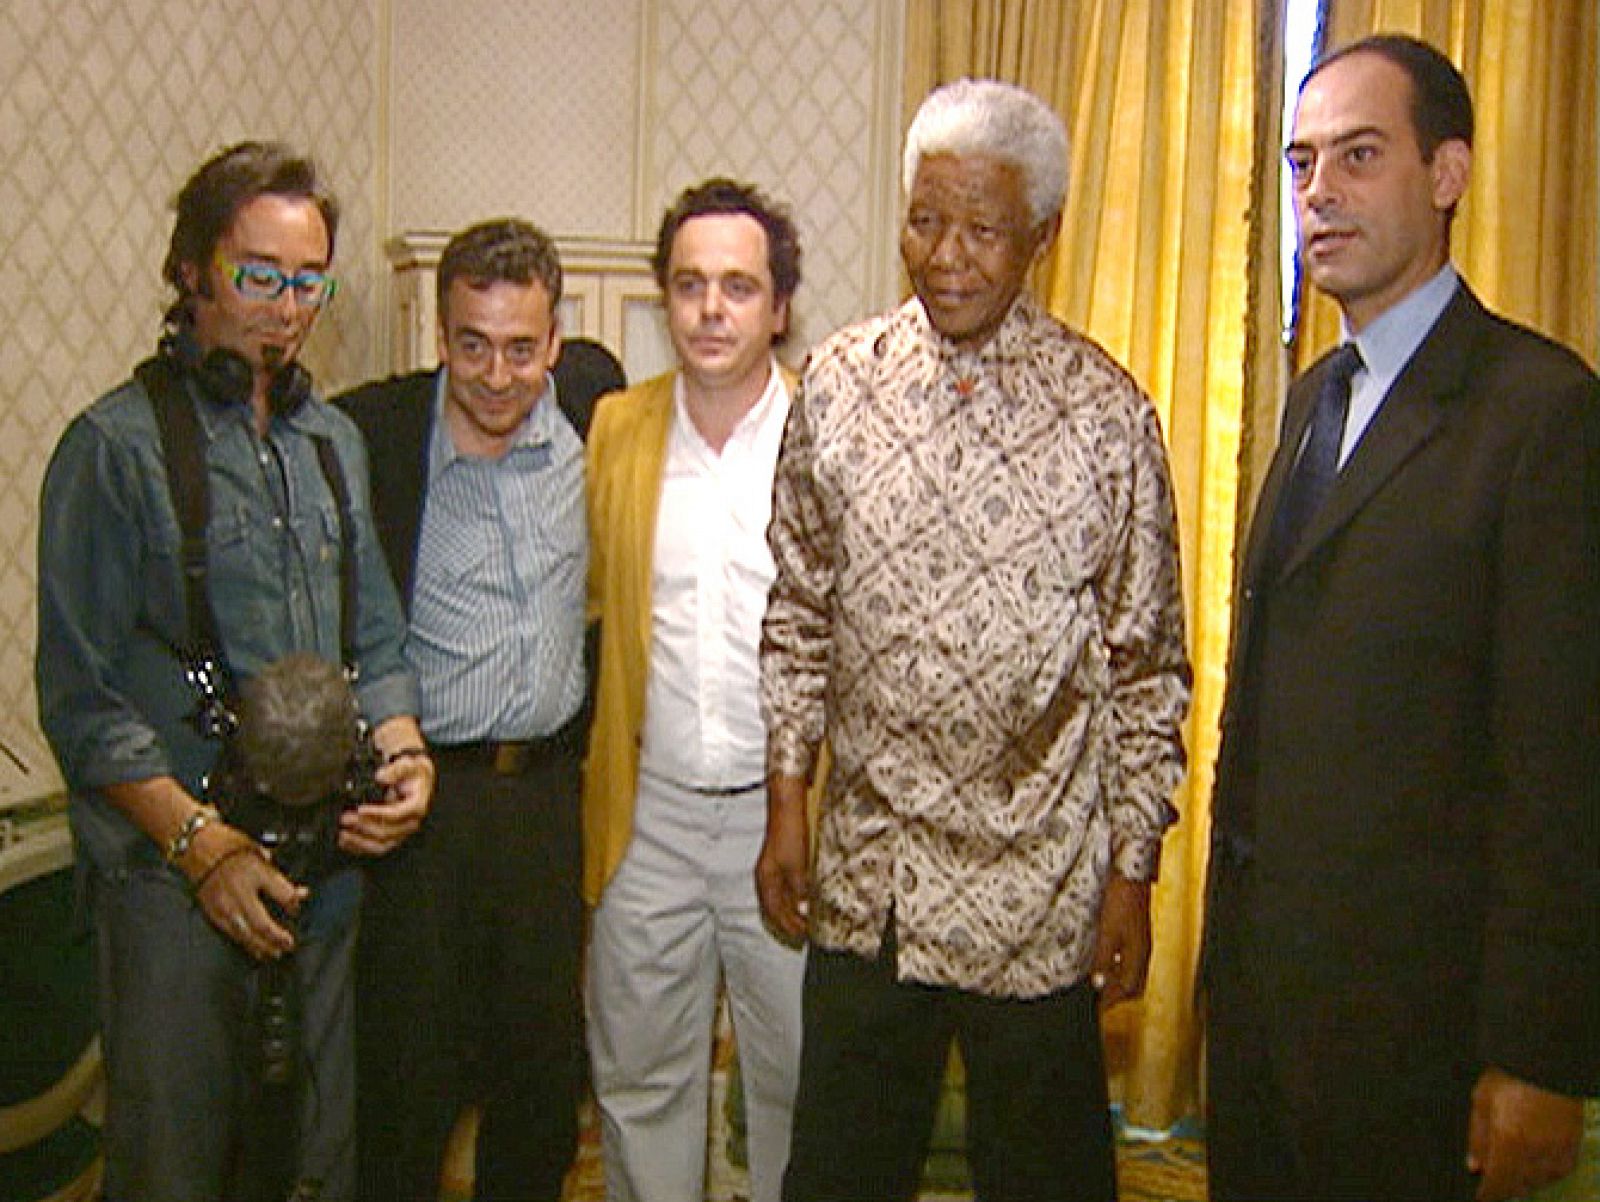 Los miembros del equipo con Mandela